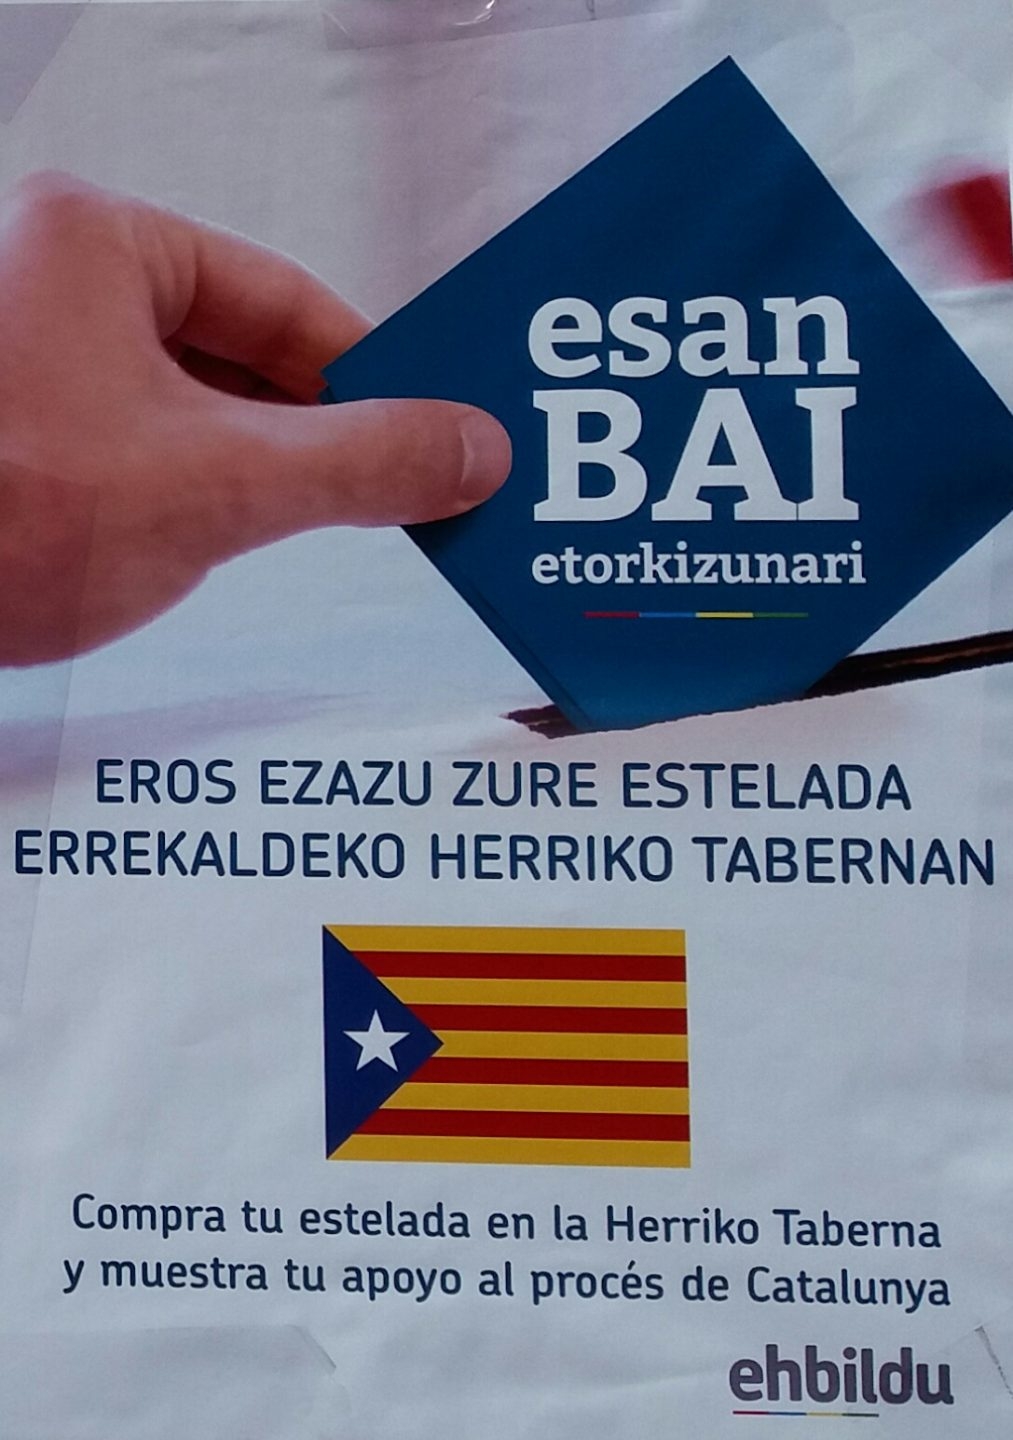 Uno de los carteles promovidos por EH Bildu en los que se insta a comprar esteladas en una 'Herriko Taberna'.